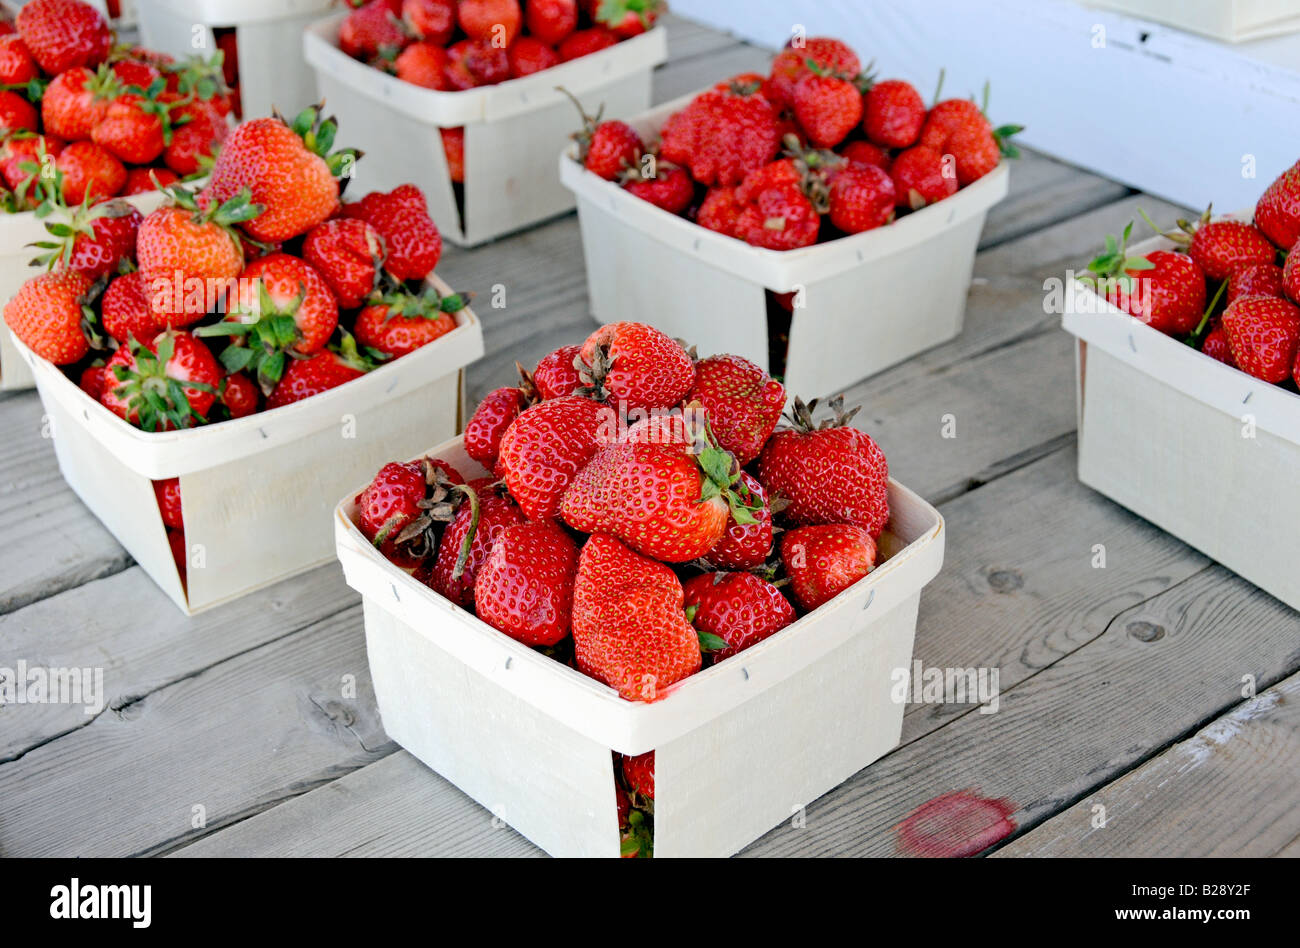 Frisch gepflückt Erdbeeren auf einem Bauernhof stand Stockfoto